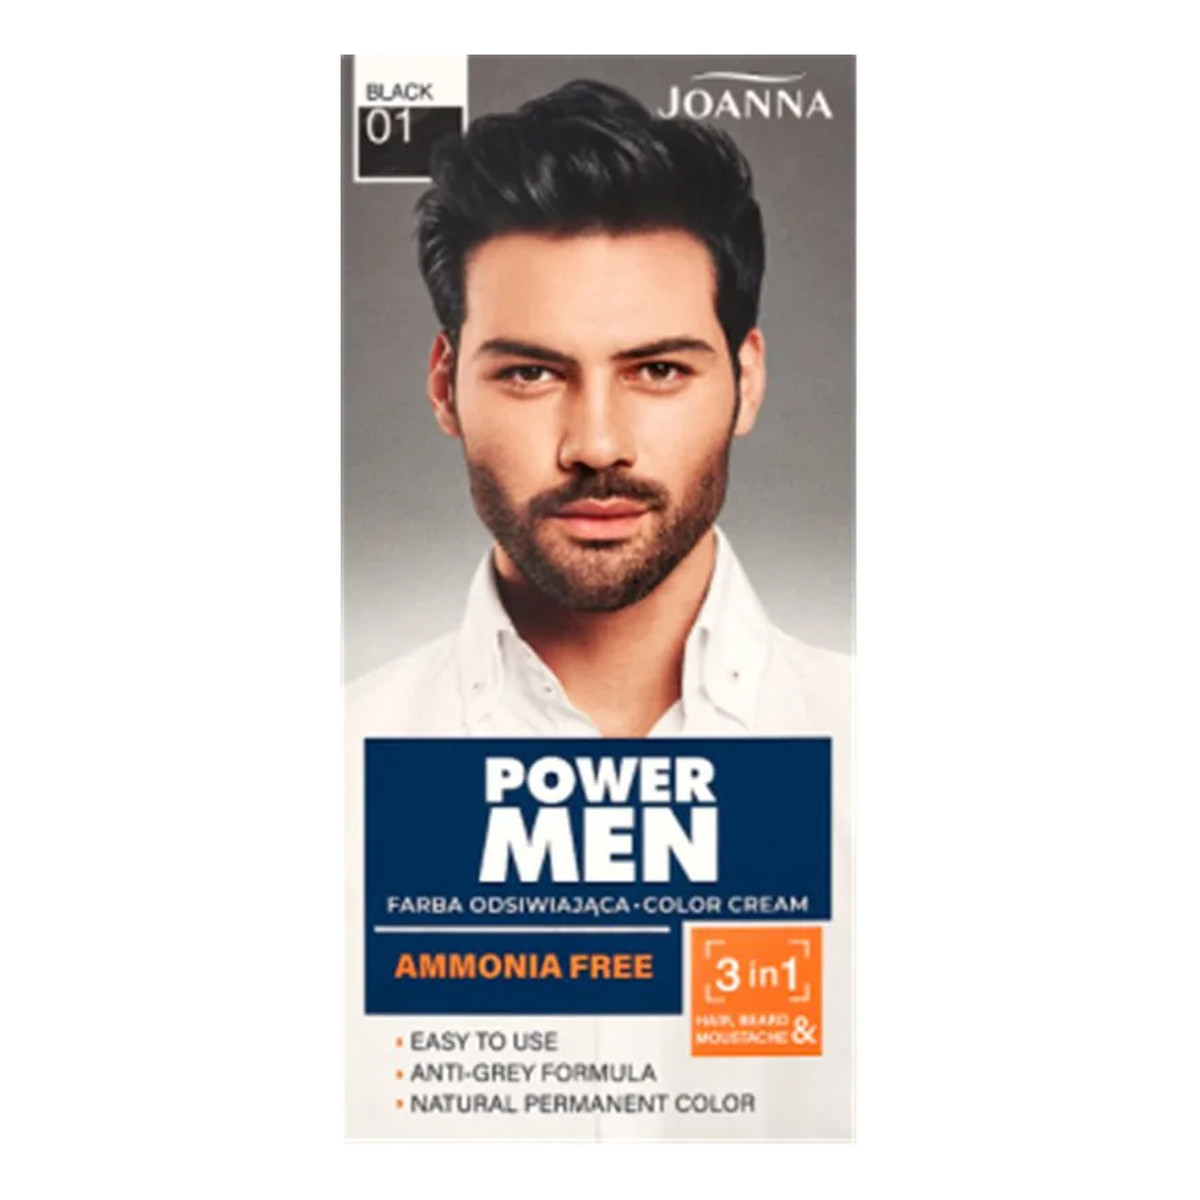 Joanna Power Men Color Cream Farba do włosów 3in1 dla mężczyzn 100g